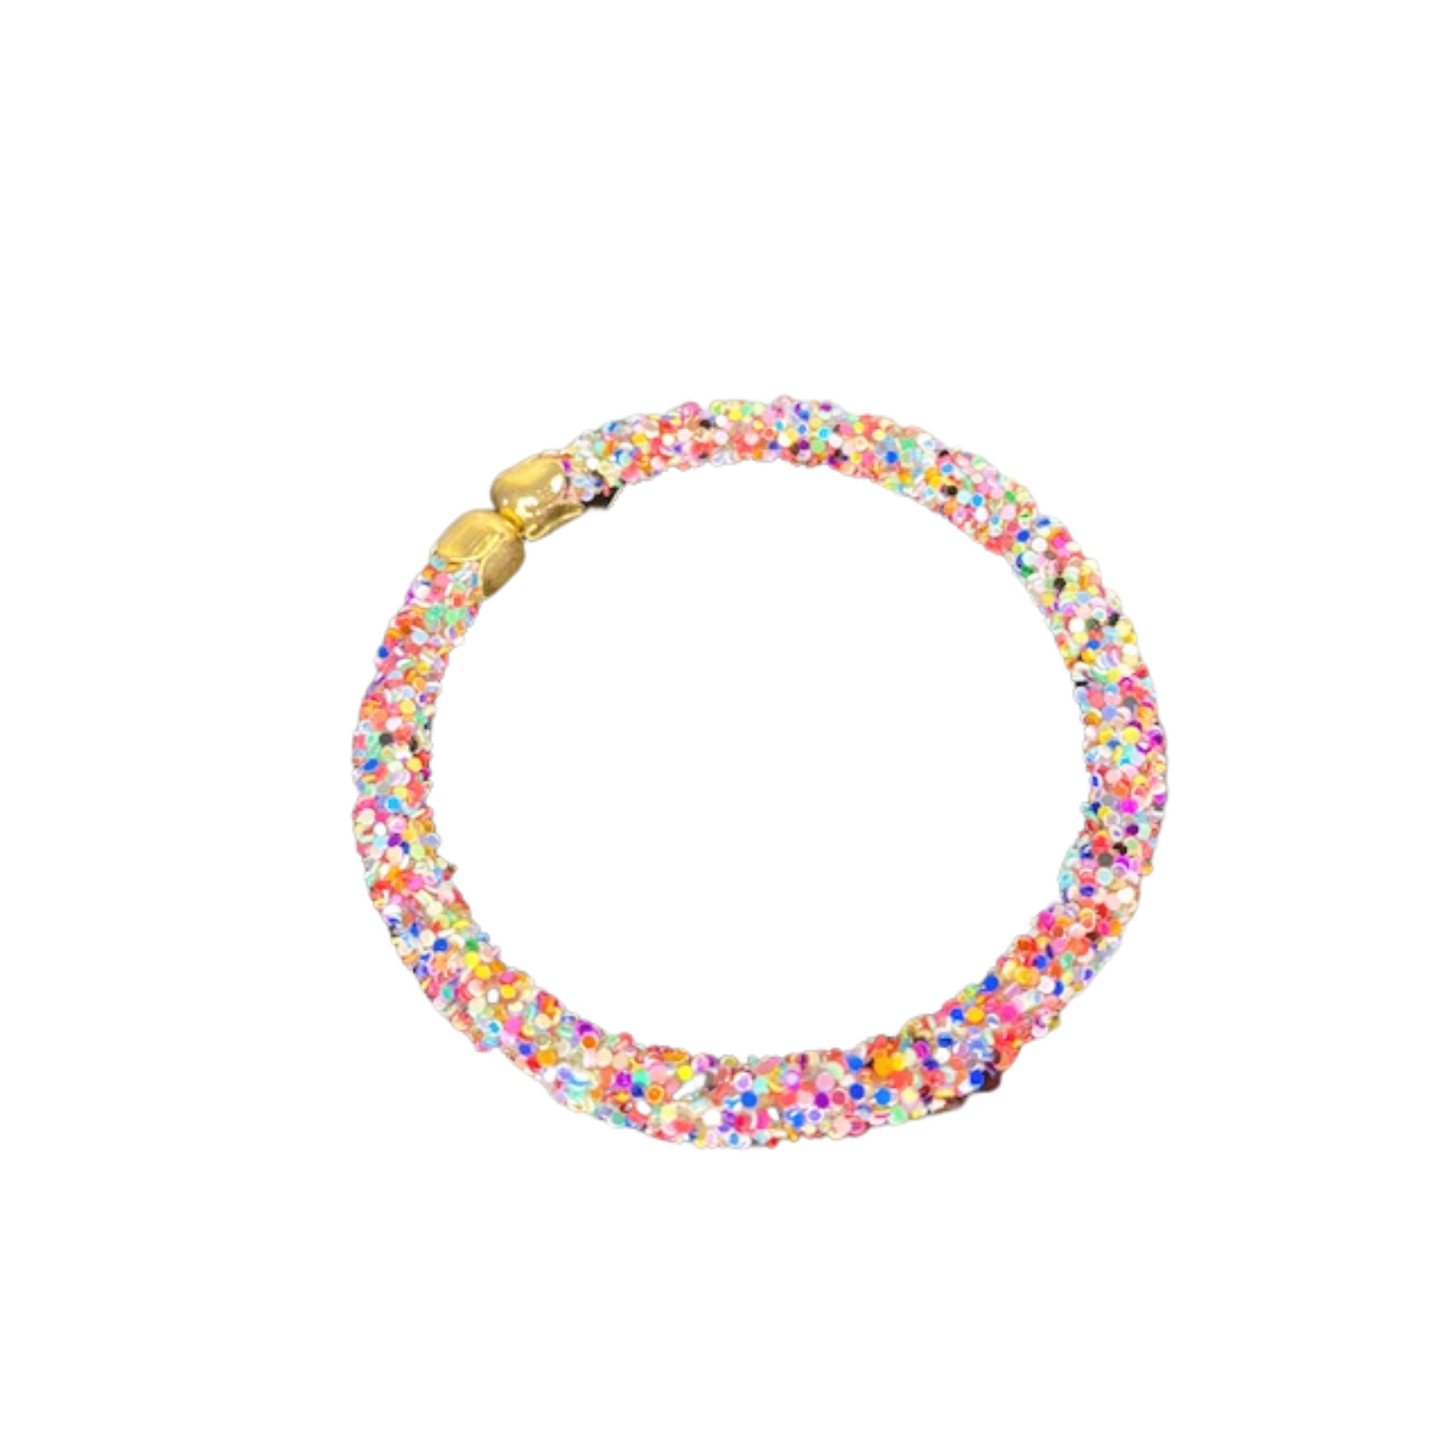 Rainbow Glitter Adjustable Bracelet, Rainbow Glitter Bracelet, Bracelet, Accessories, Taylor Shaye